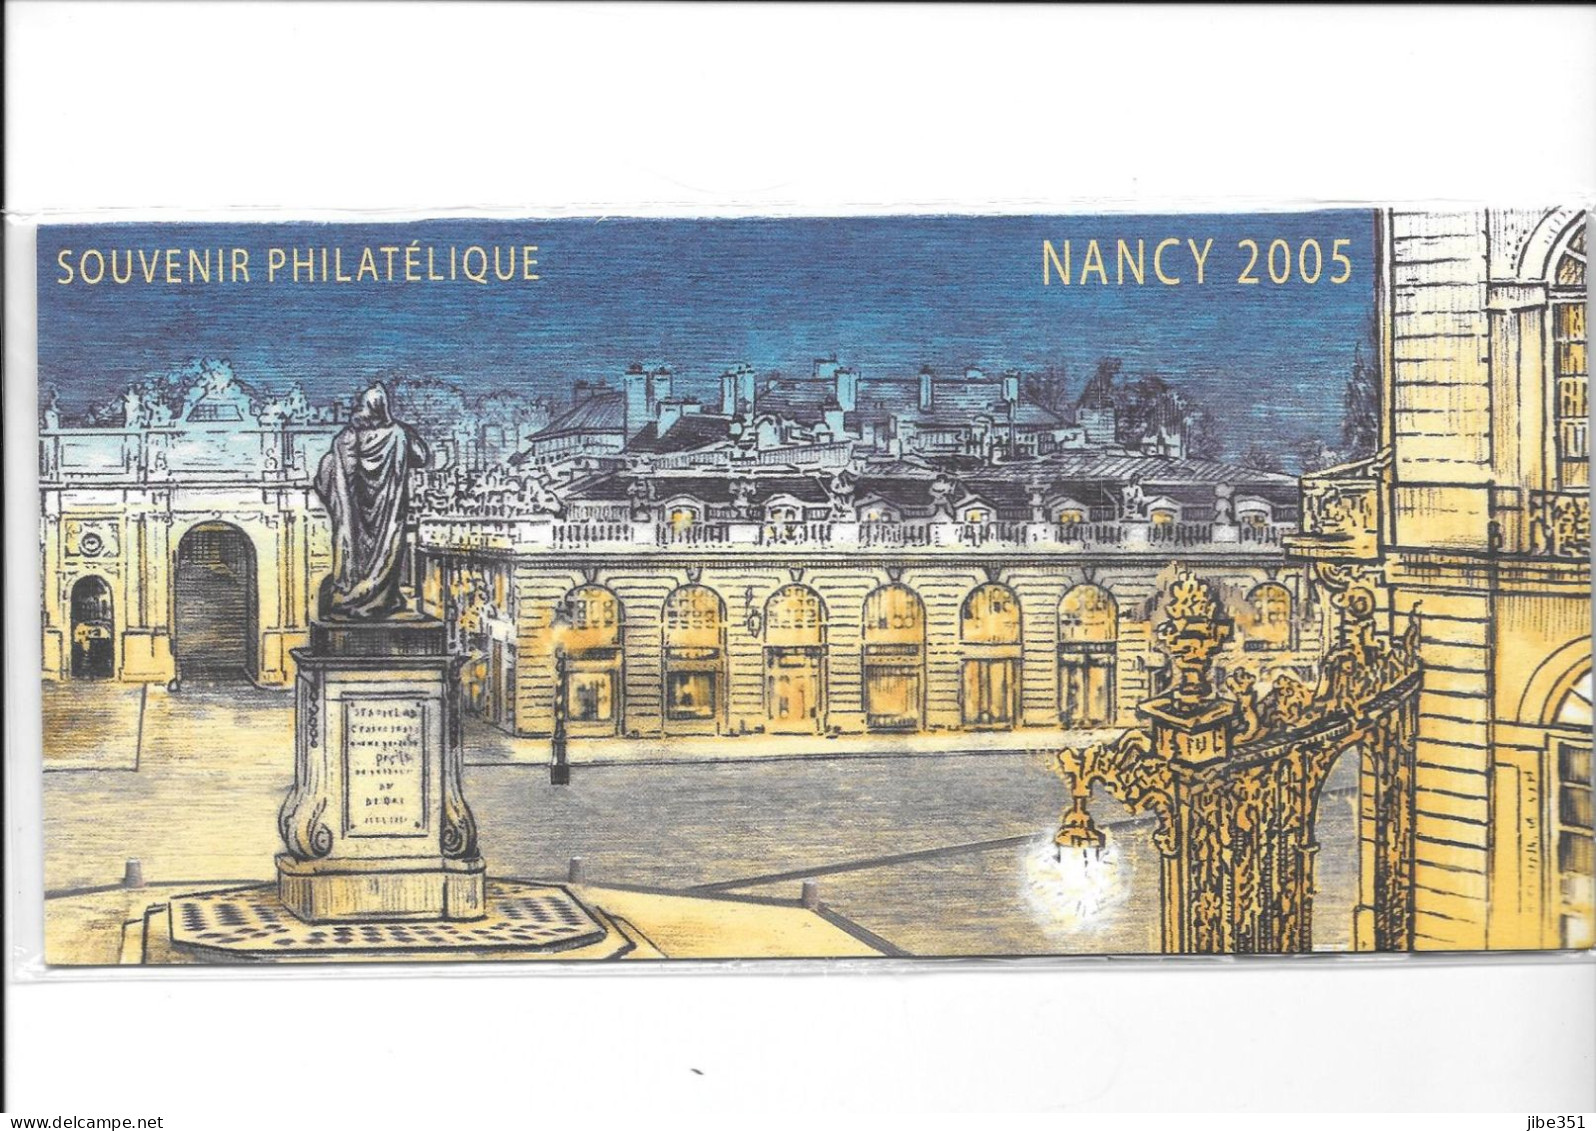 Souvenir Philatélique Nancy 2005 Neuf Sous Blister - Blocs Souvenir